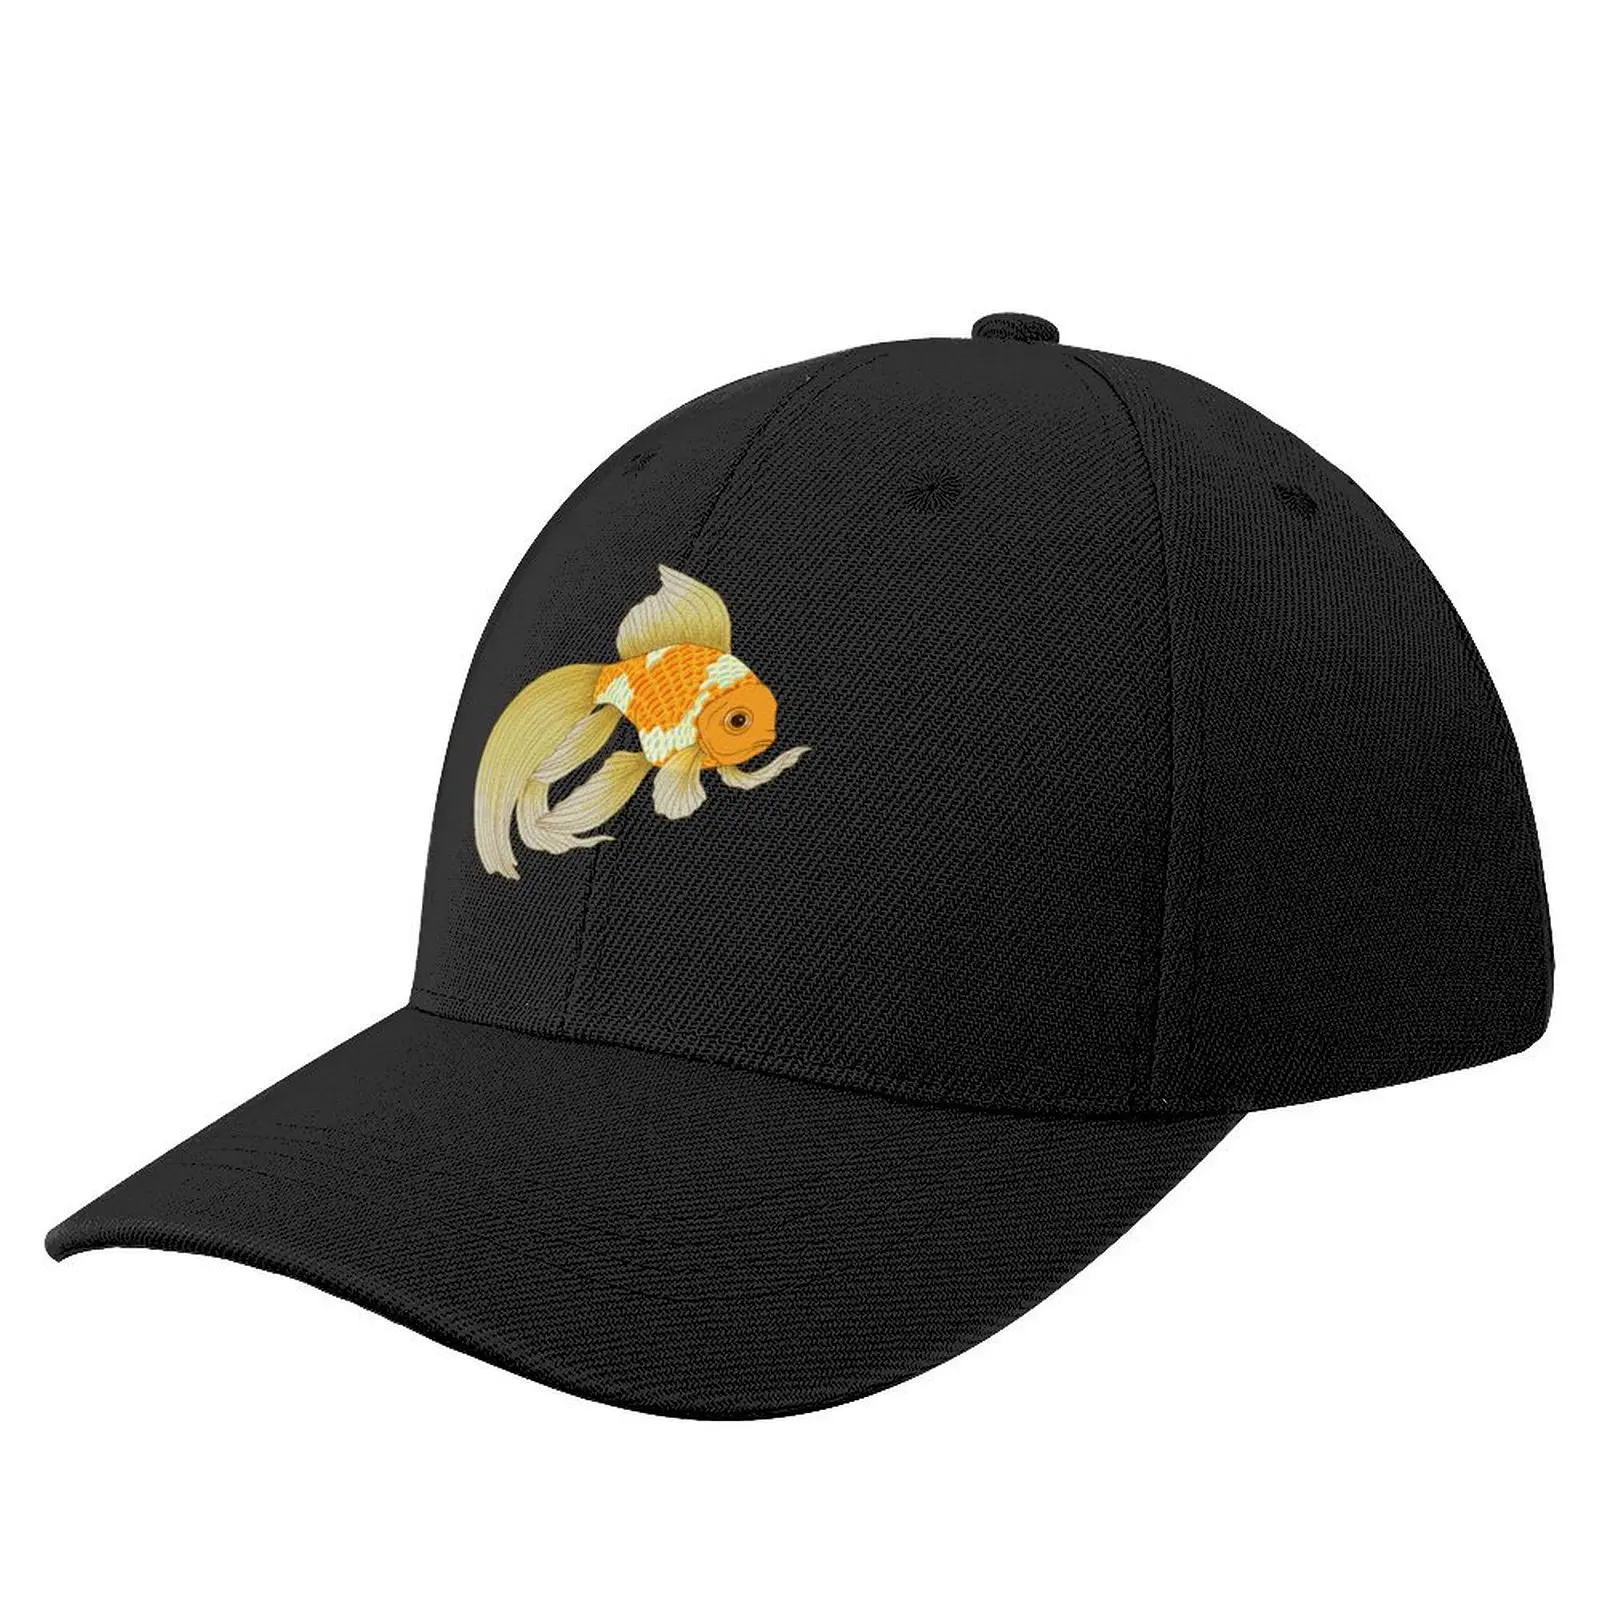 

Бейсболка с золотой рыбкой счастья Новинка в шляпе Кепка-тракер винтажная Женская пляжная кепка для мужчин